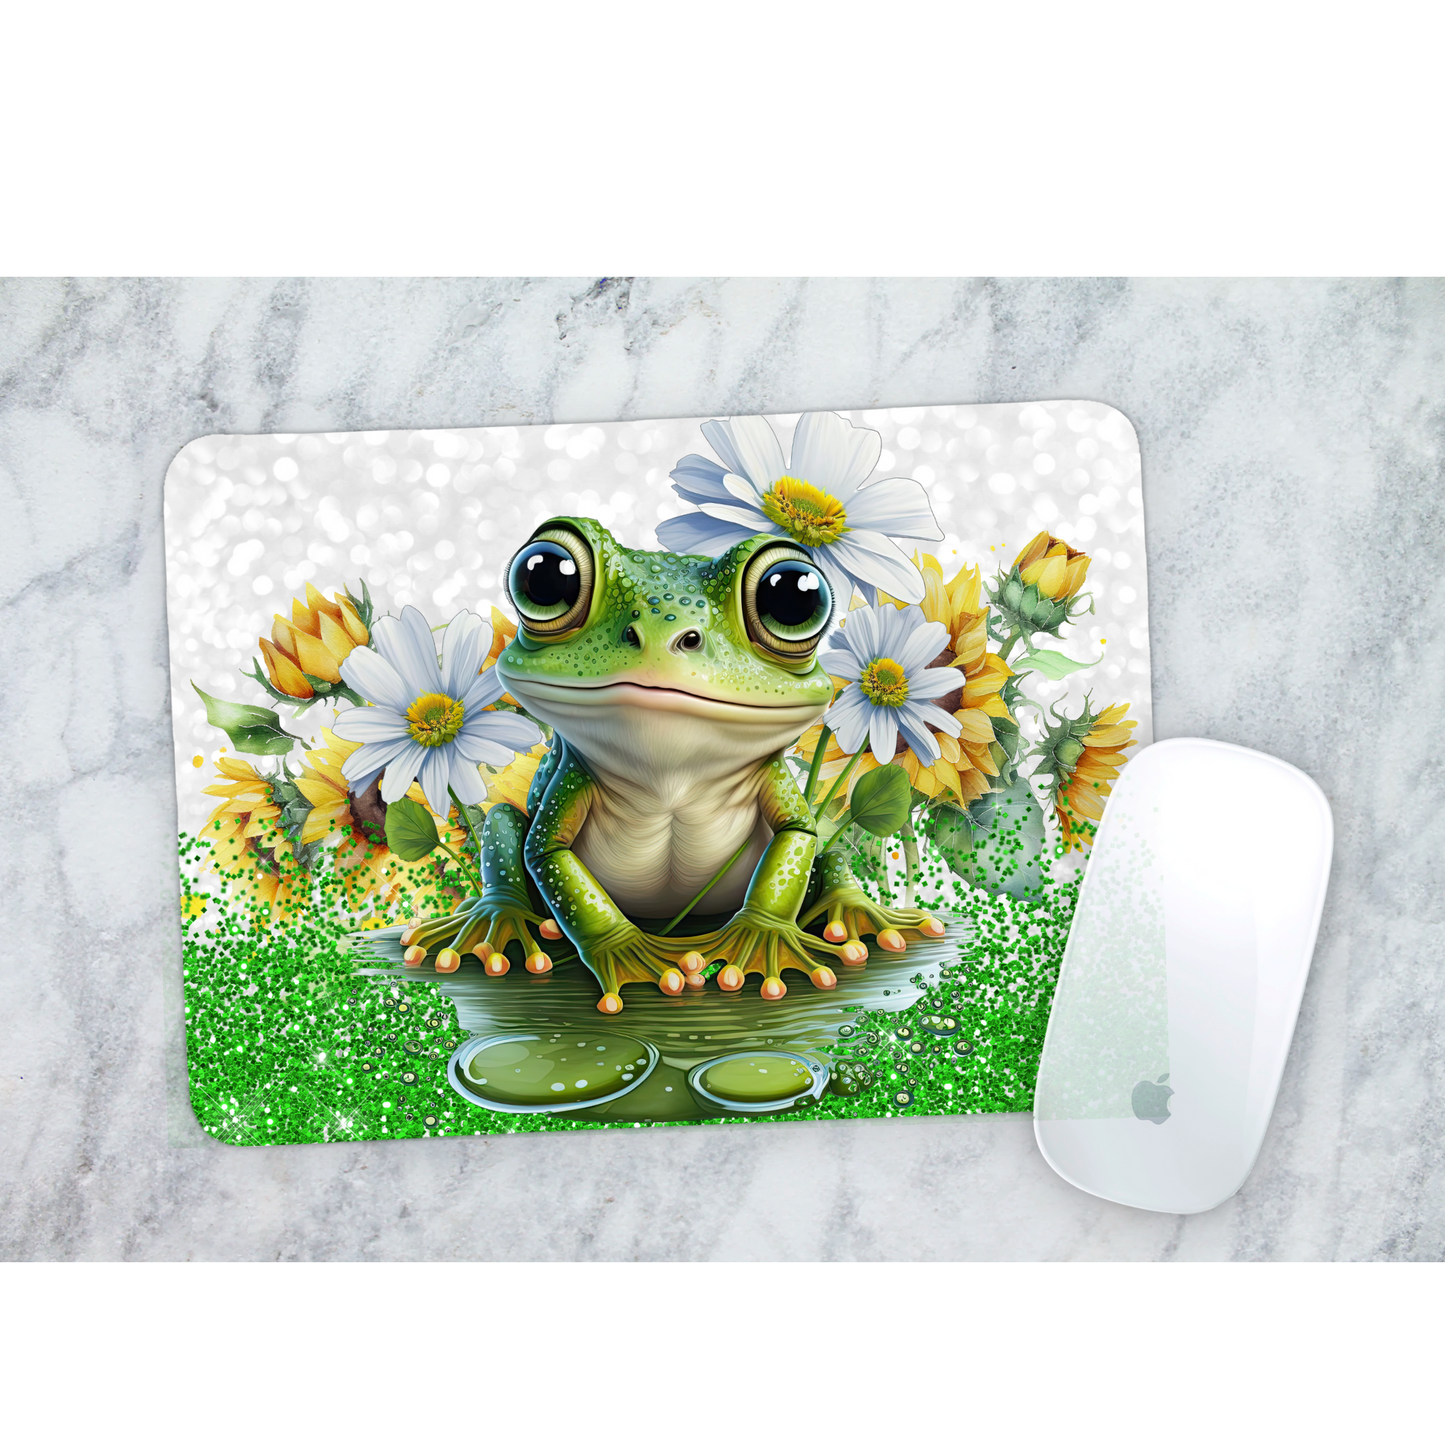 Premium Printed Anti-Slip Mouse Mat - Ultra Durable Frog Design